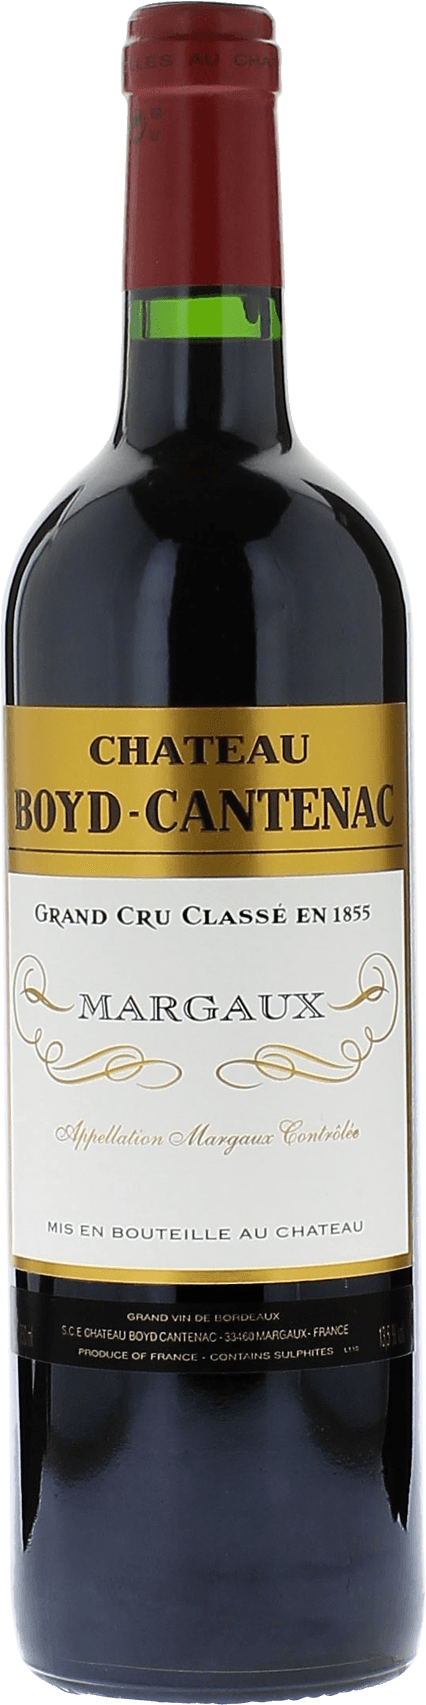 Boyd cantenac 2009 2me Grand cru class Margaux, Bordeaux rouge